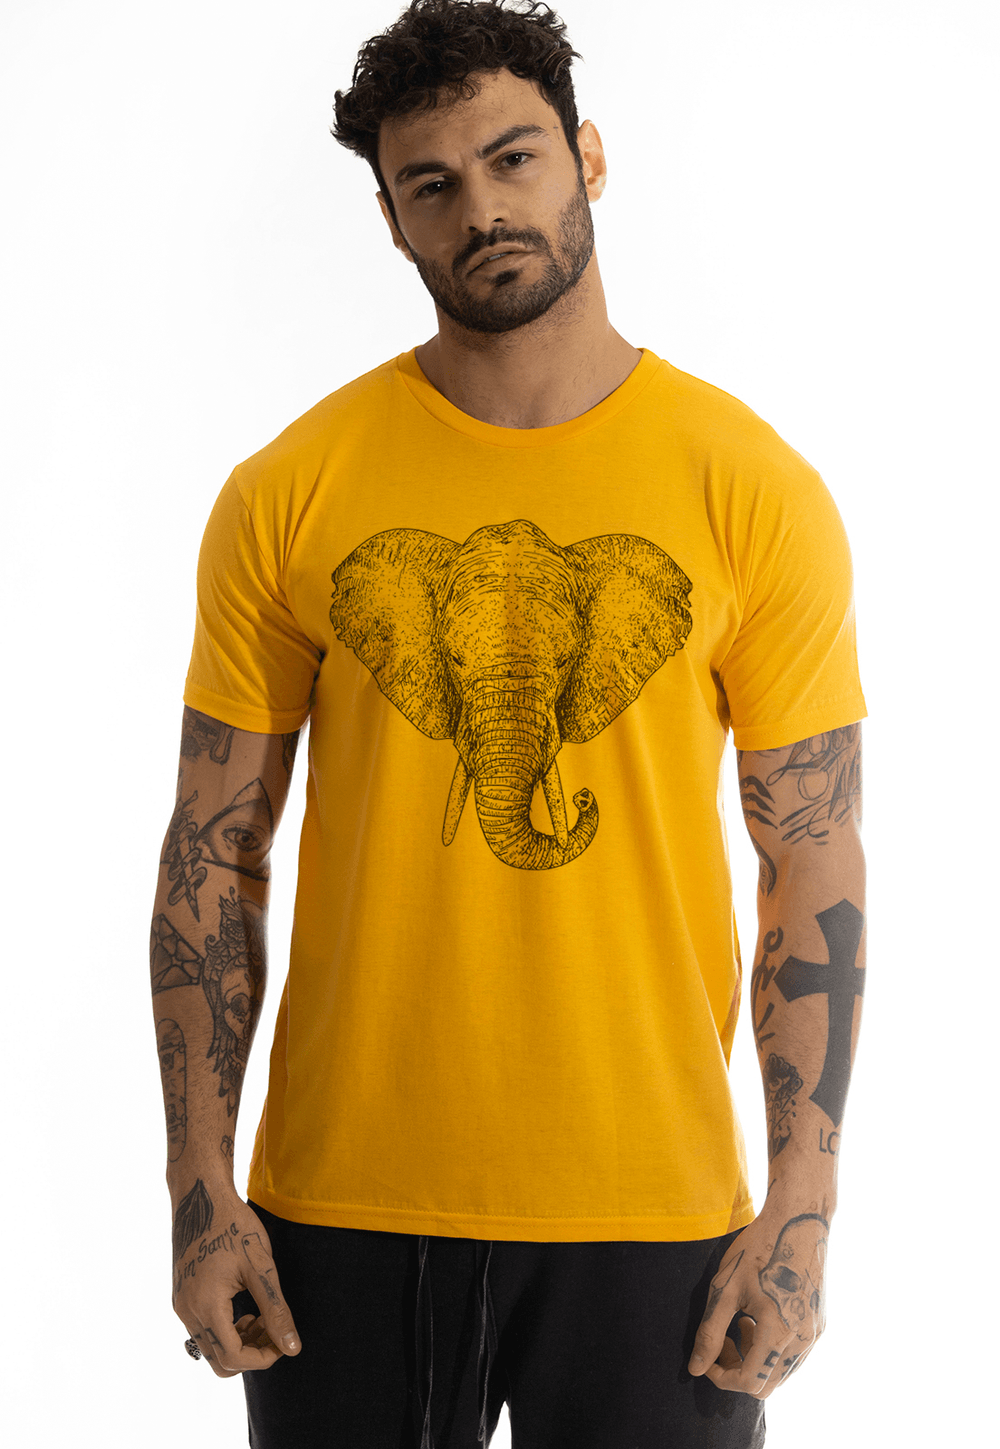 Camiseta Arimlap Elefante 1 DTG Cor:Amarelo Queimado;Tamanho:M;Genero:Masculino